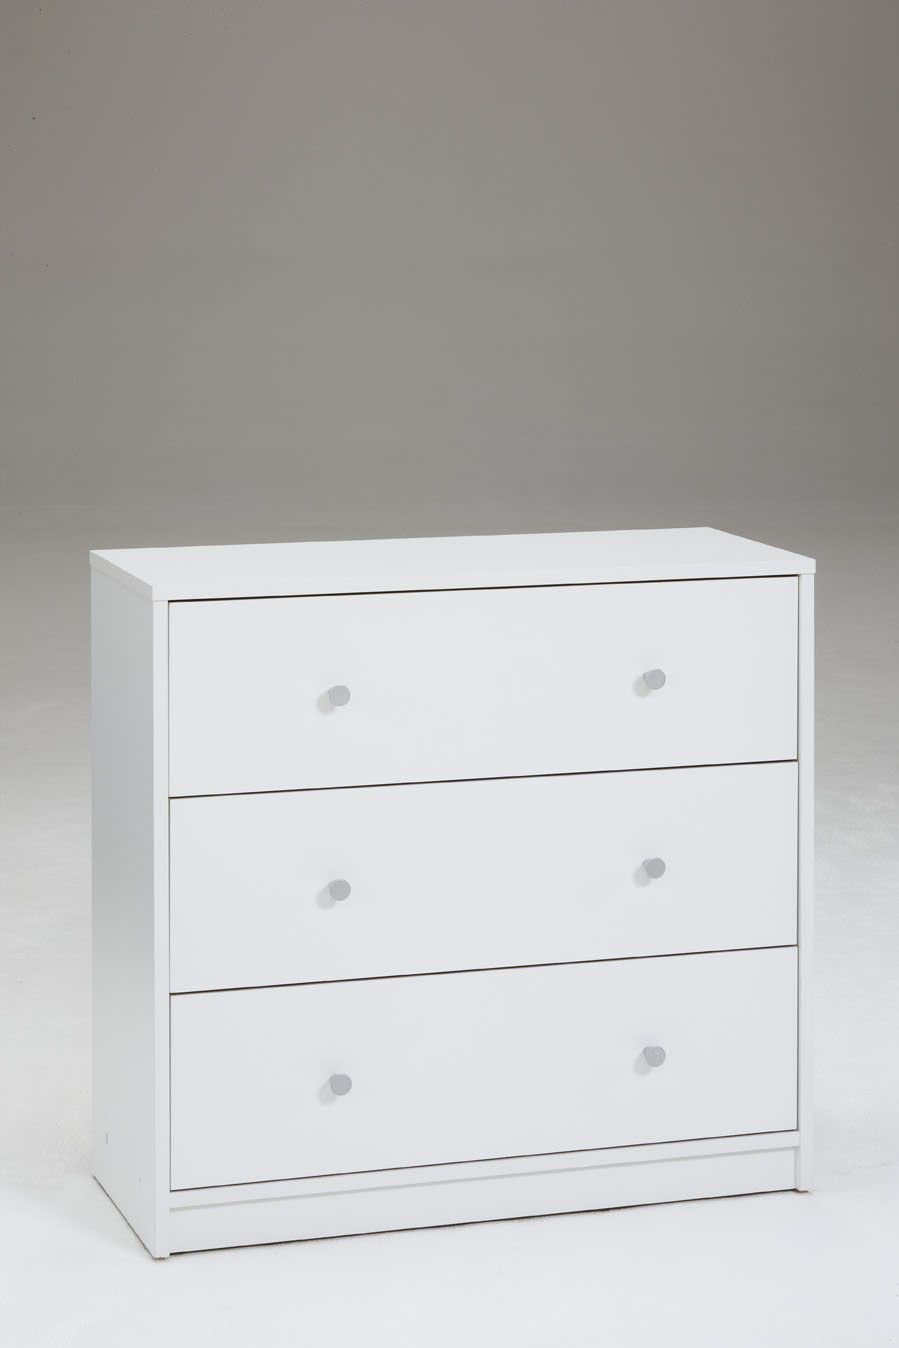 3 Drawer Dresser Modern Furniture Chest Changer Storage Bedroom White Wood Night Stand